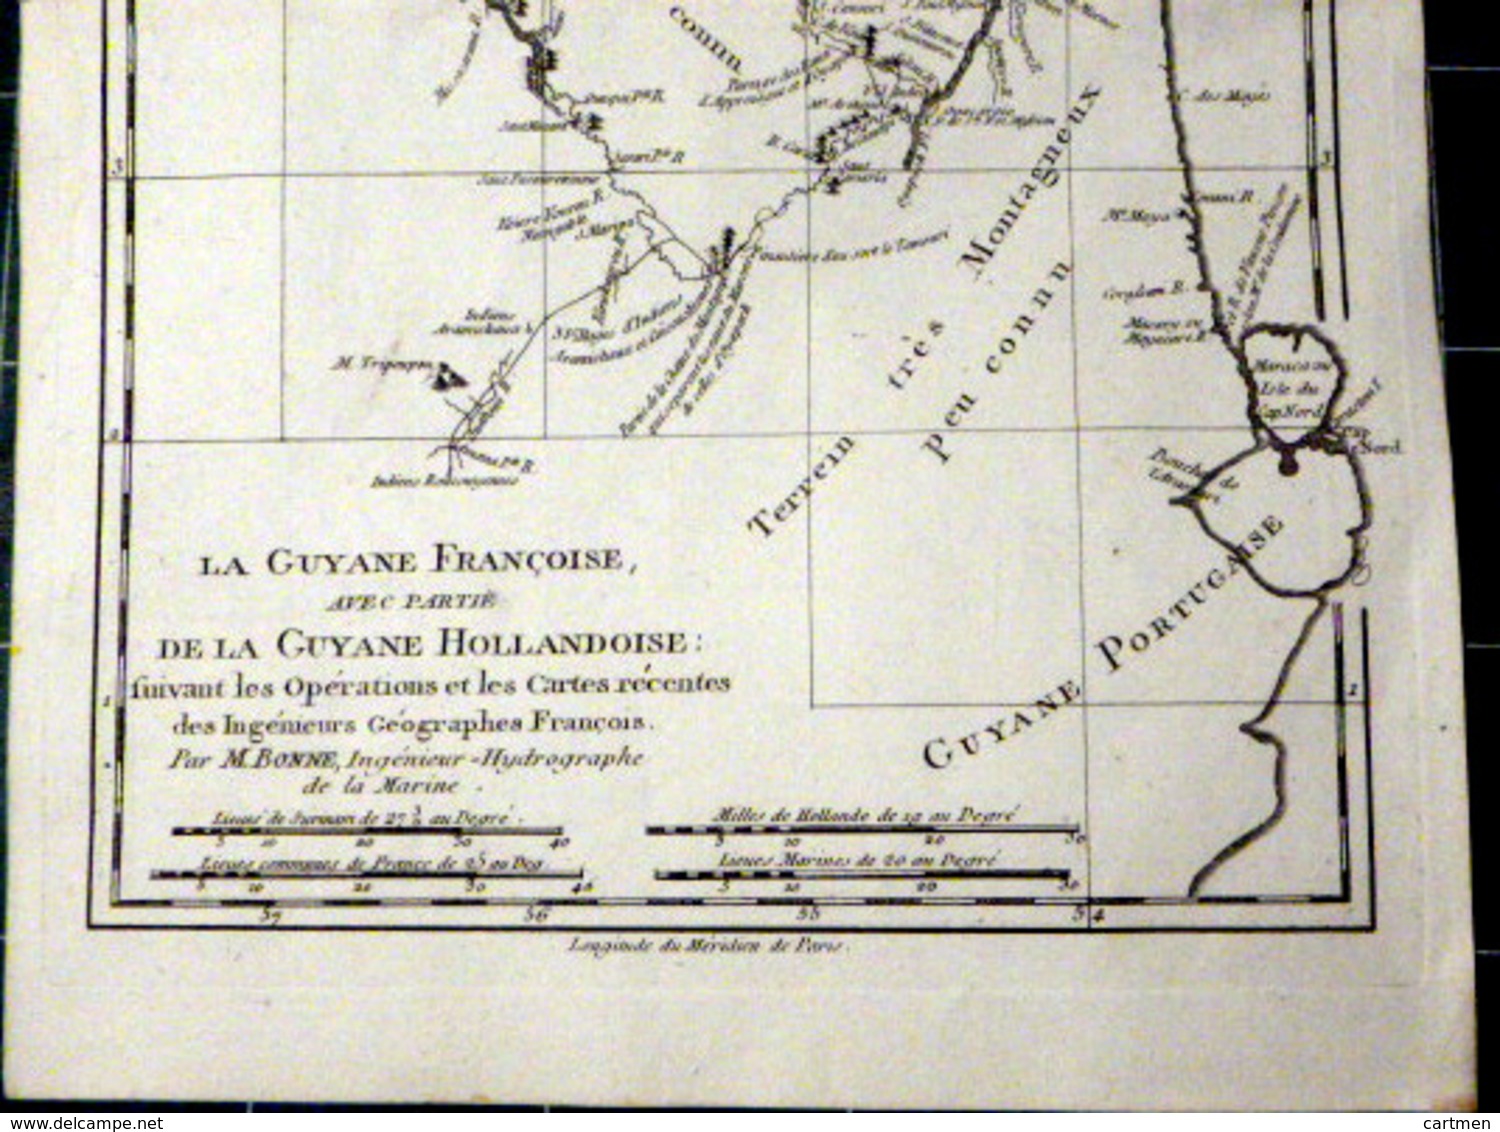 GUYANE FRANCAISE CARTE GEOGRAPHIQUE 18° GUYANE DRESSEE PAR BONNE VERS 1770 BEL ETAT 37 X 24 CM AUTHENTIQUE DECORATIVE - Carte Geographique